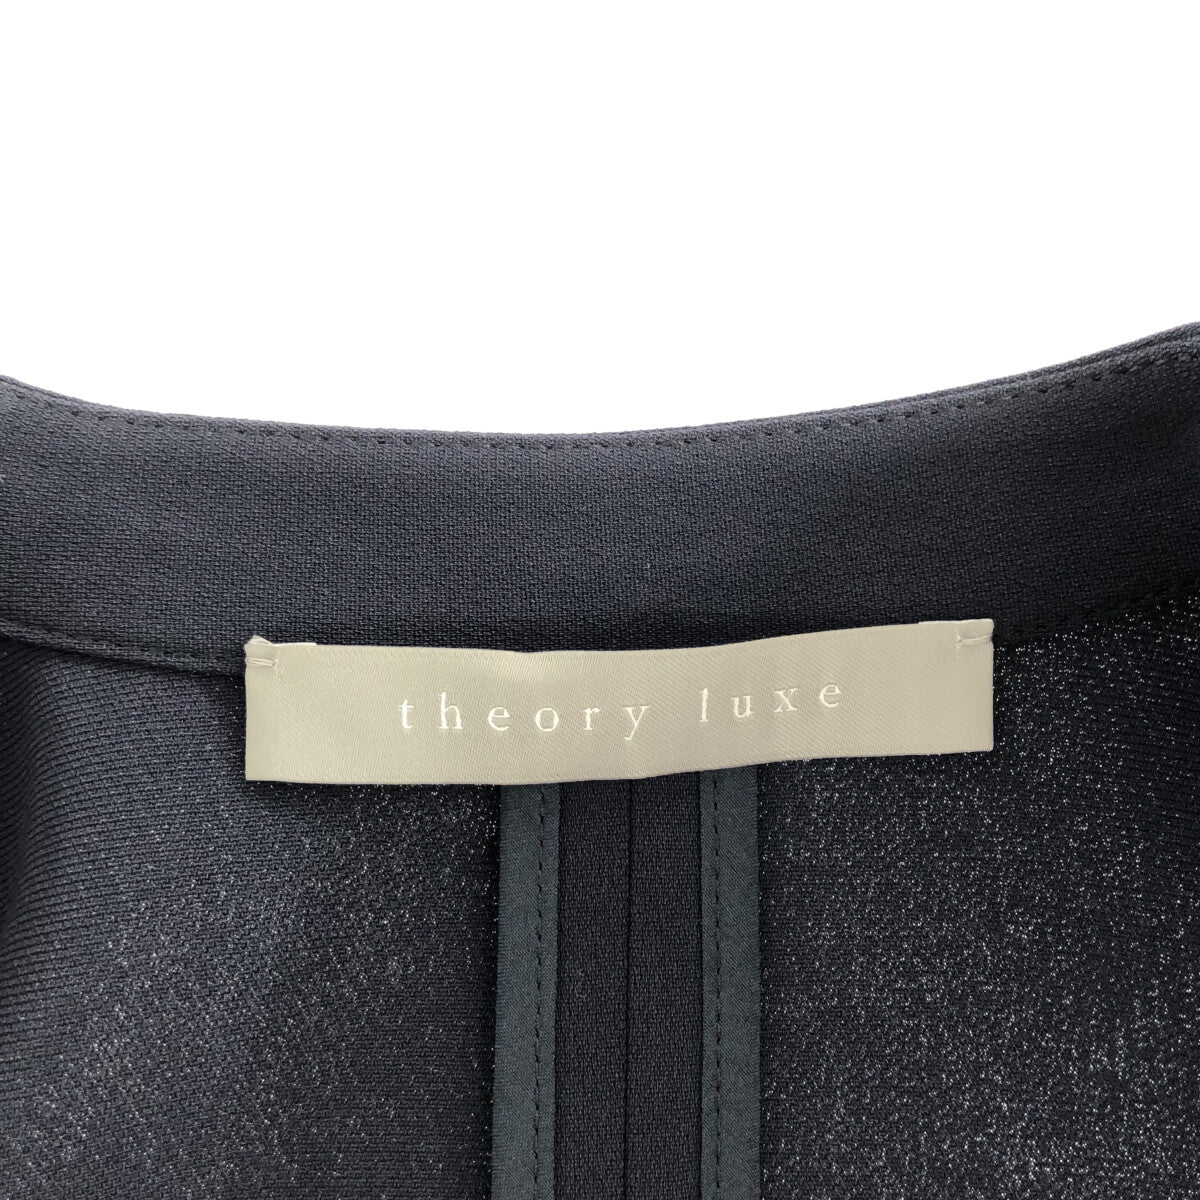 【定価8.6万円】theory luxe ノーカラーコート 紺色 32 美品ロングコート